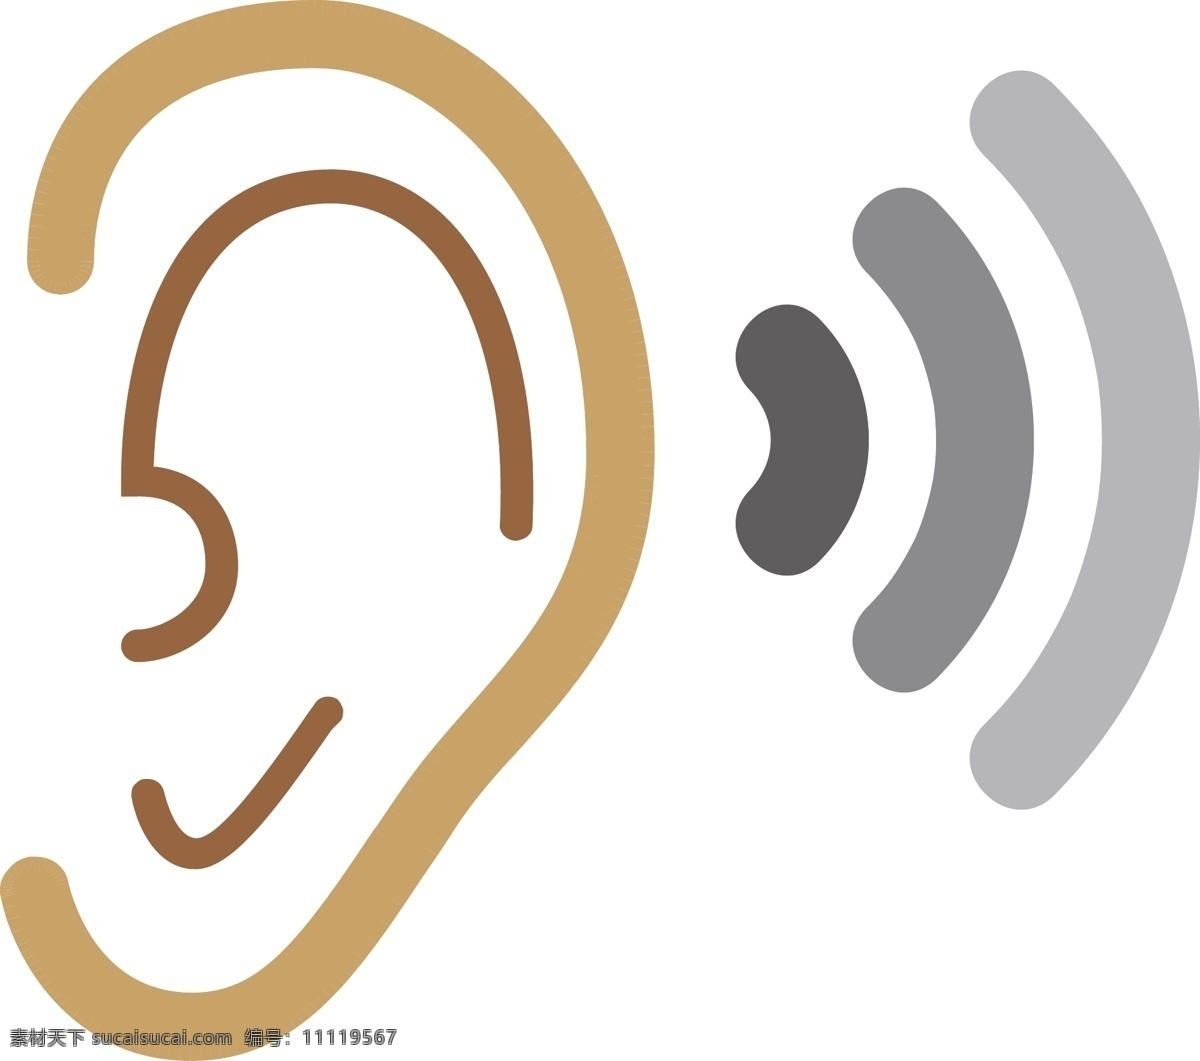 耳朵 听力 装饰 图标 卡通装饰 矢量图案 扁平化 设计图